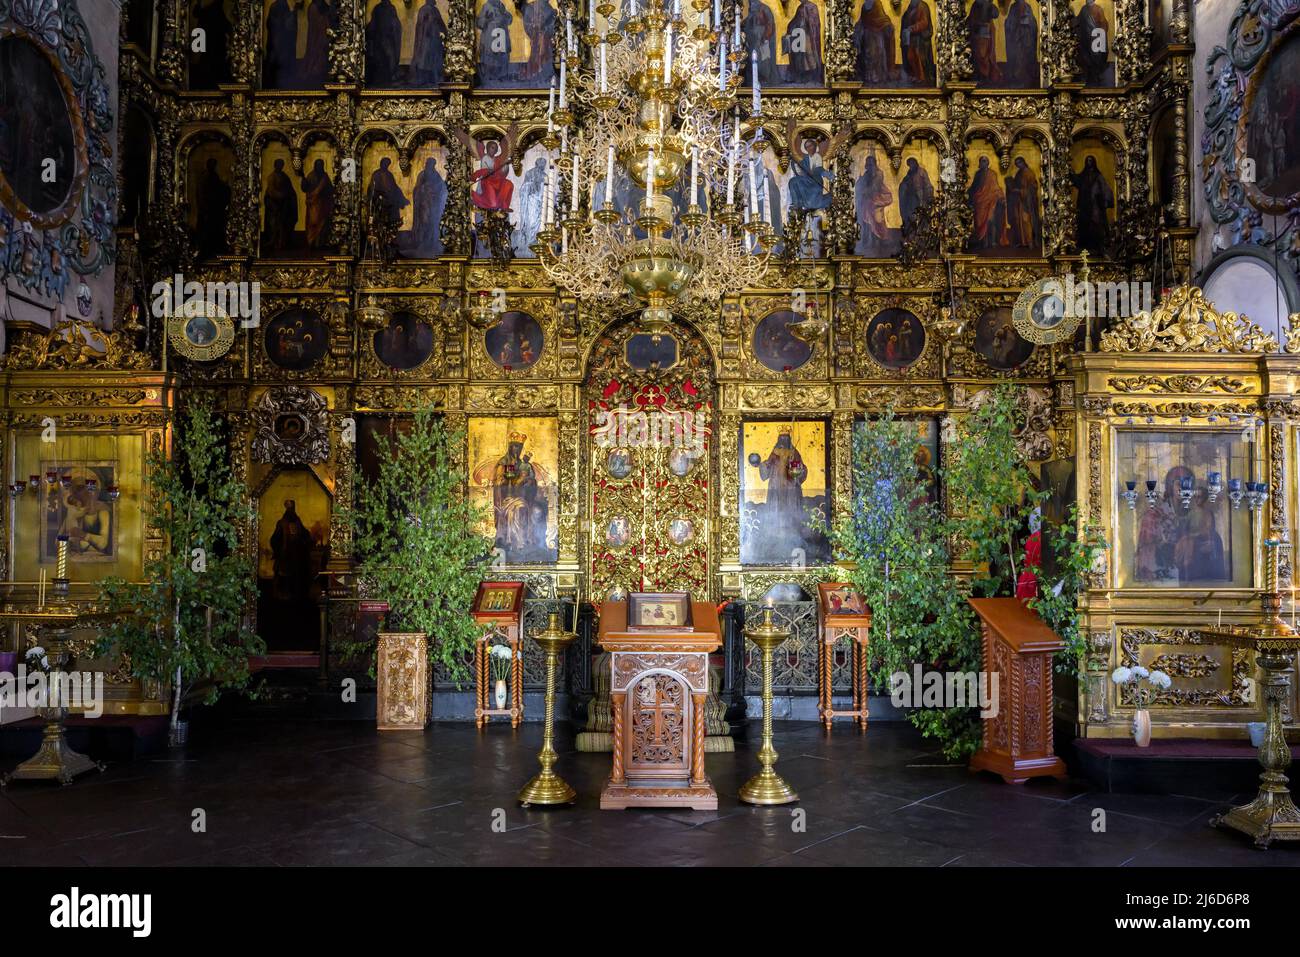 Kasan, Russland - 19. Juni 2021: Innenraum der Kathedrale der Heiligen Peter und Paul, Kasan, Tatarstan. Luxus verzierten Altar der russisch-orthodoxen Kirche, insid Stockfoto